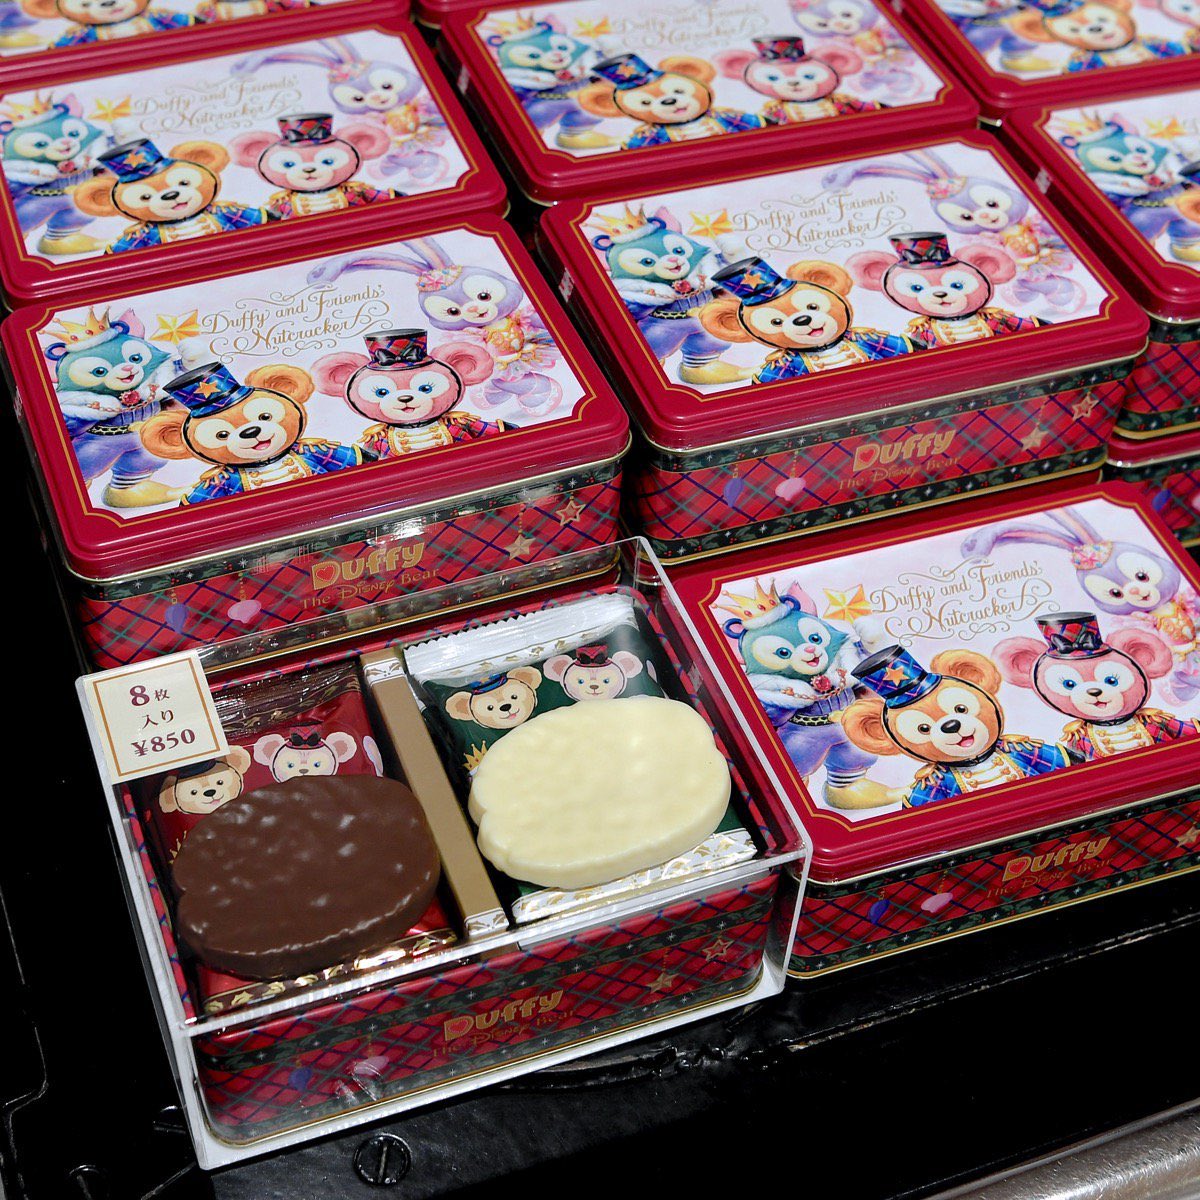 Mezzomikiのディズニーブログ Twitterissa テーマは くるみ割り人形 東京ディズニーシー ダッフィーのクリスマス17 お菓子のお土産発売中 詳しくは T Co Qtu3mrztqb